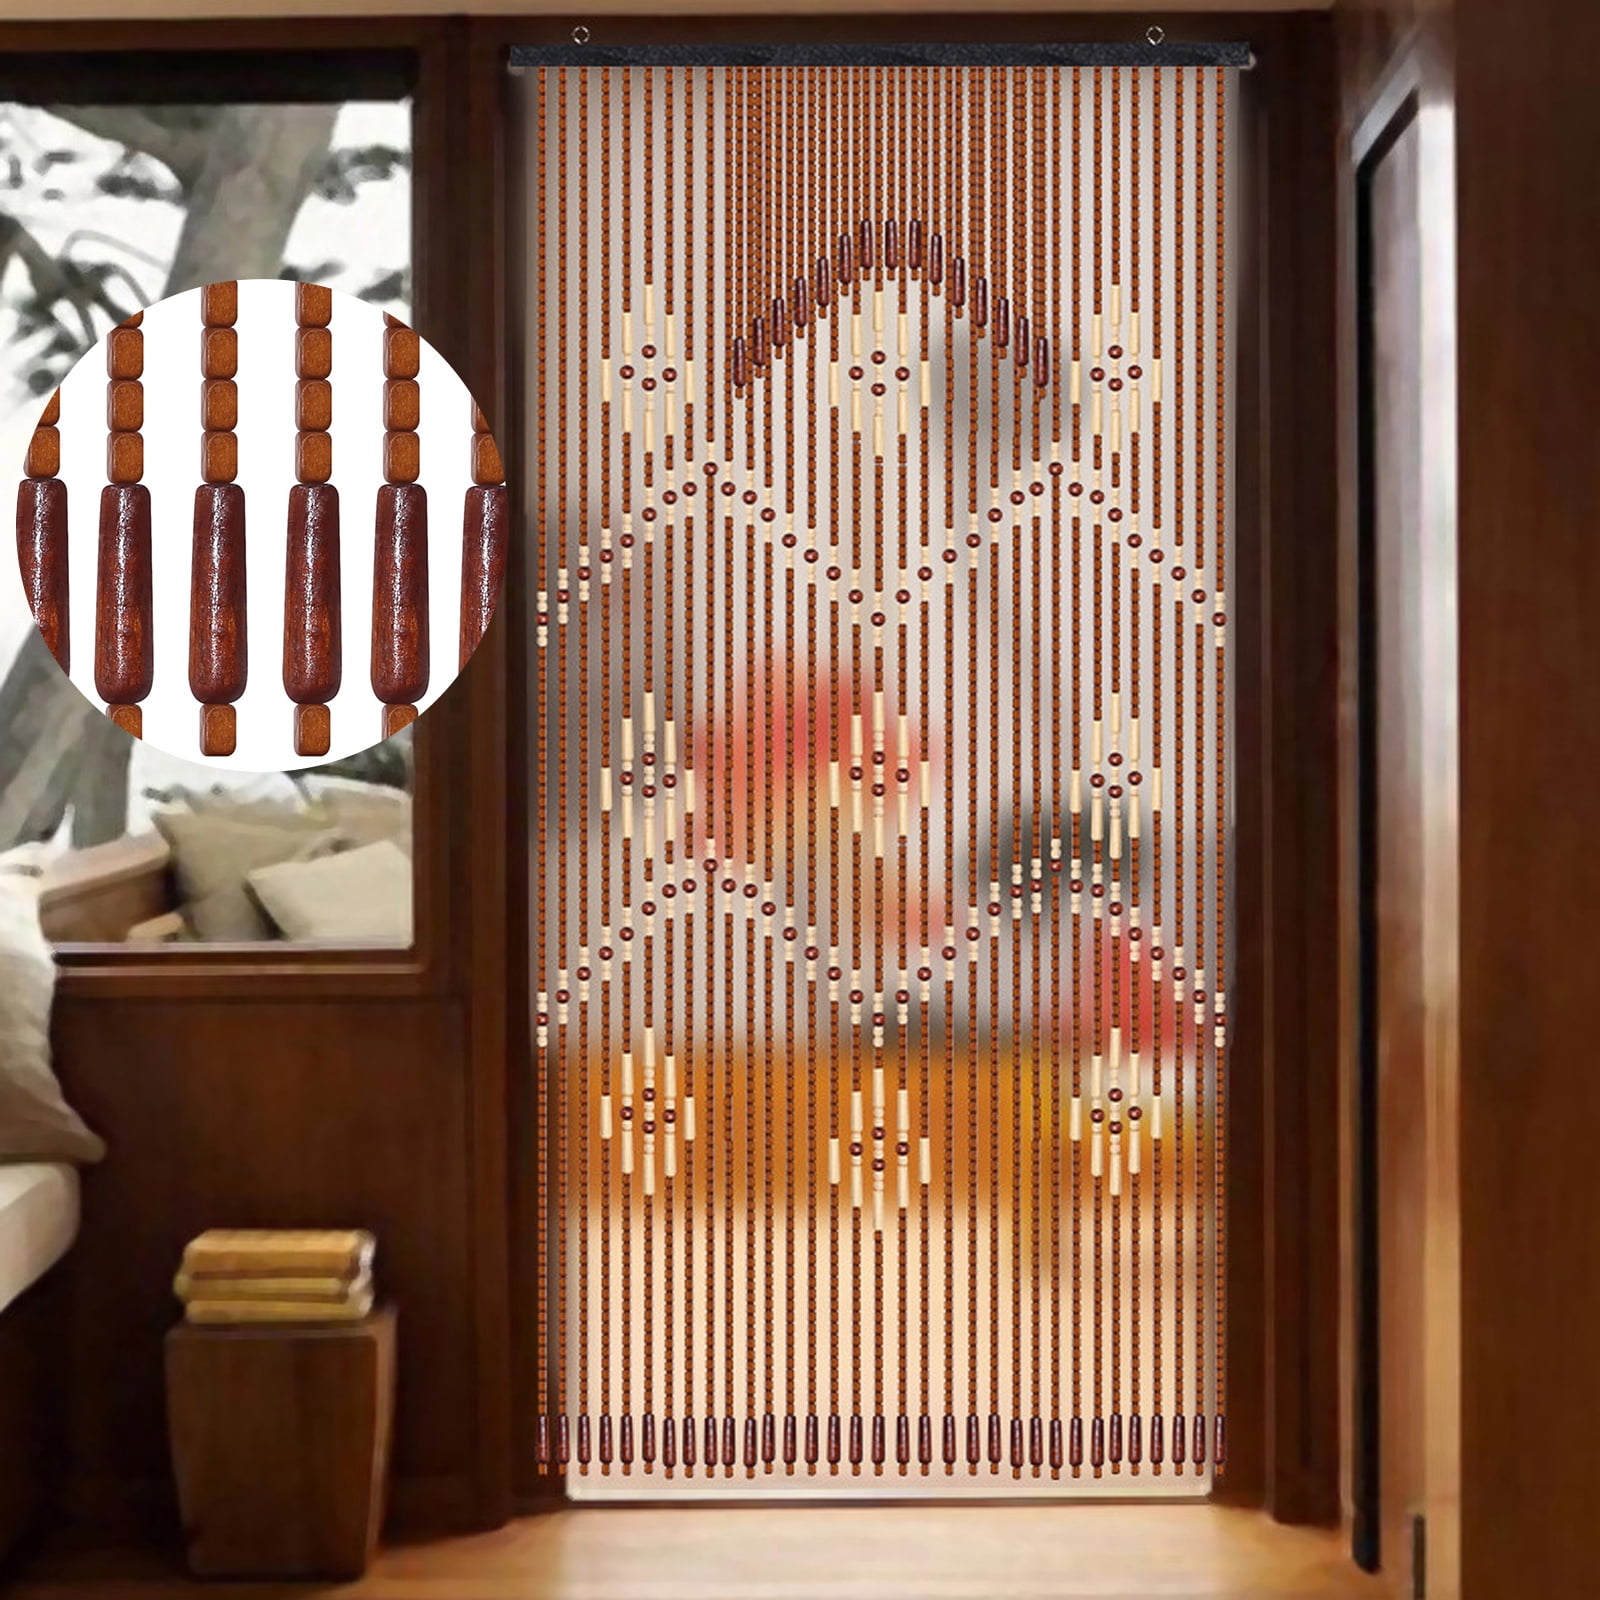 Anminy Wooden Bead Door Curtain String Bohemian Bamboo Doorway Divider 35x68in Wintersweet 32 Strands Com